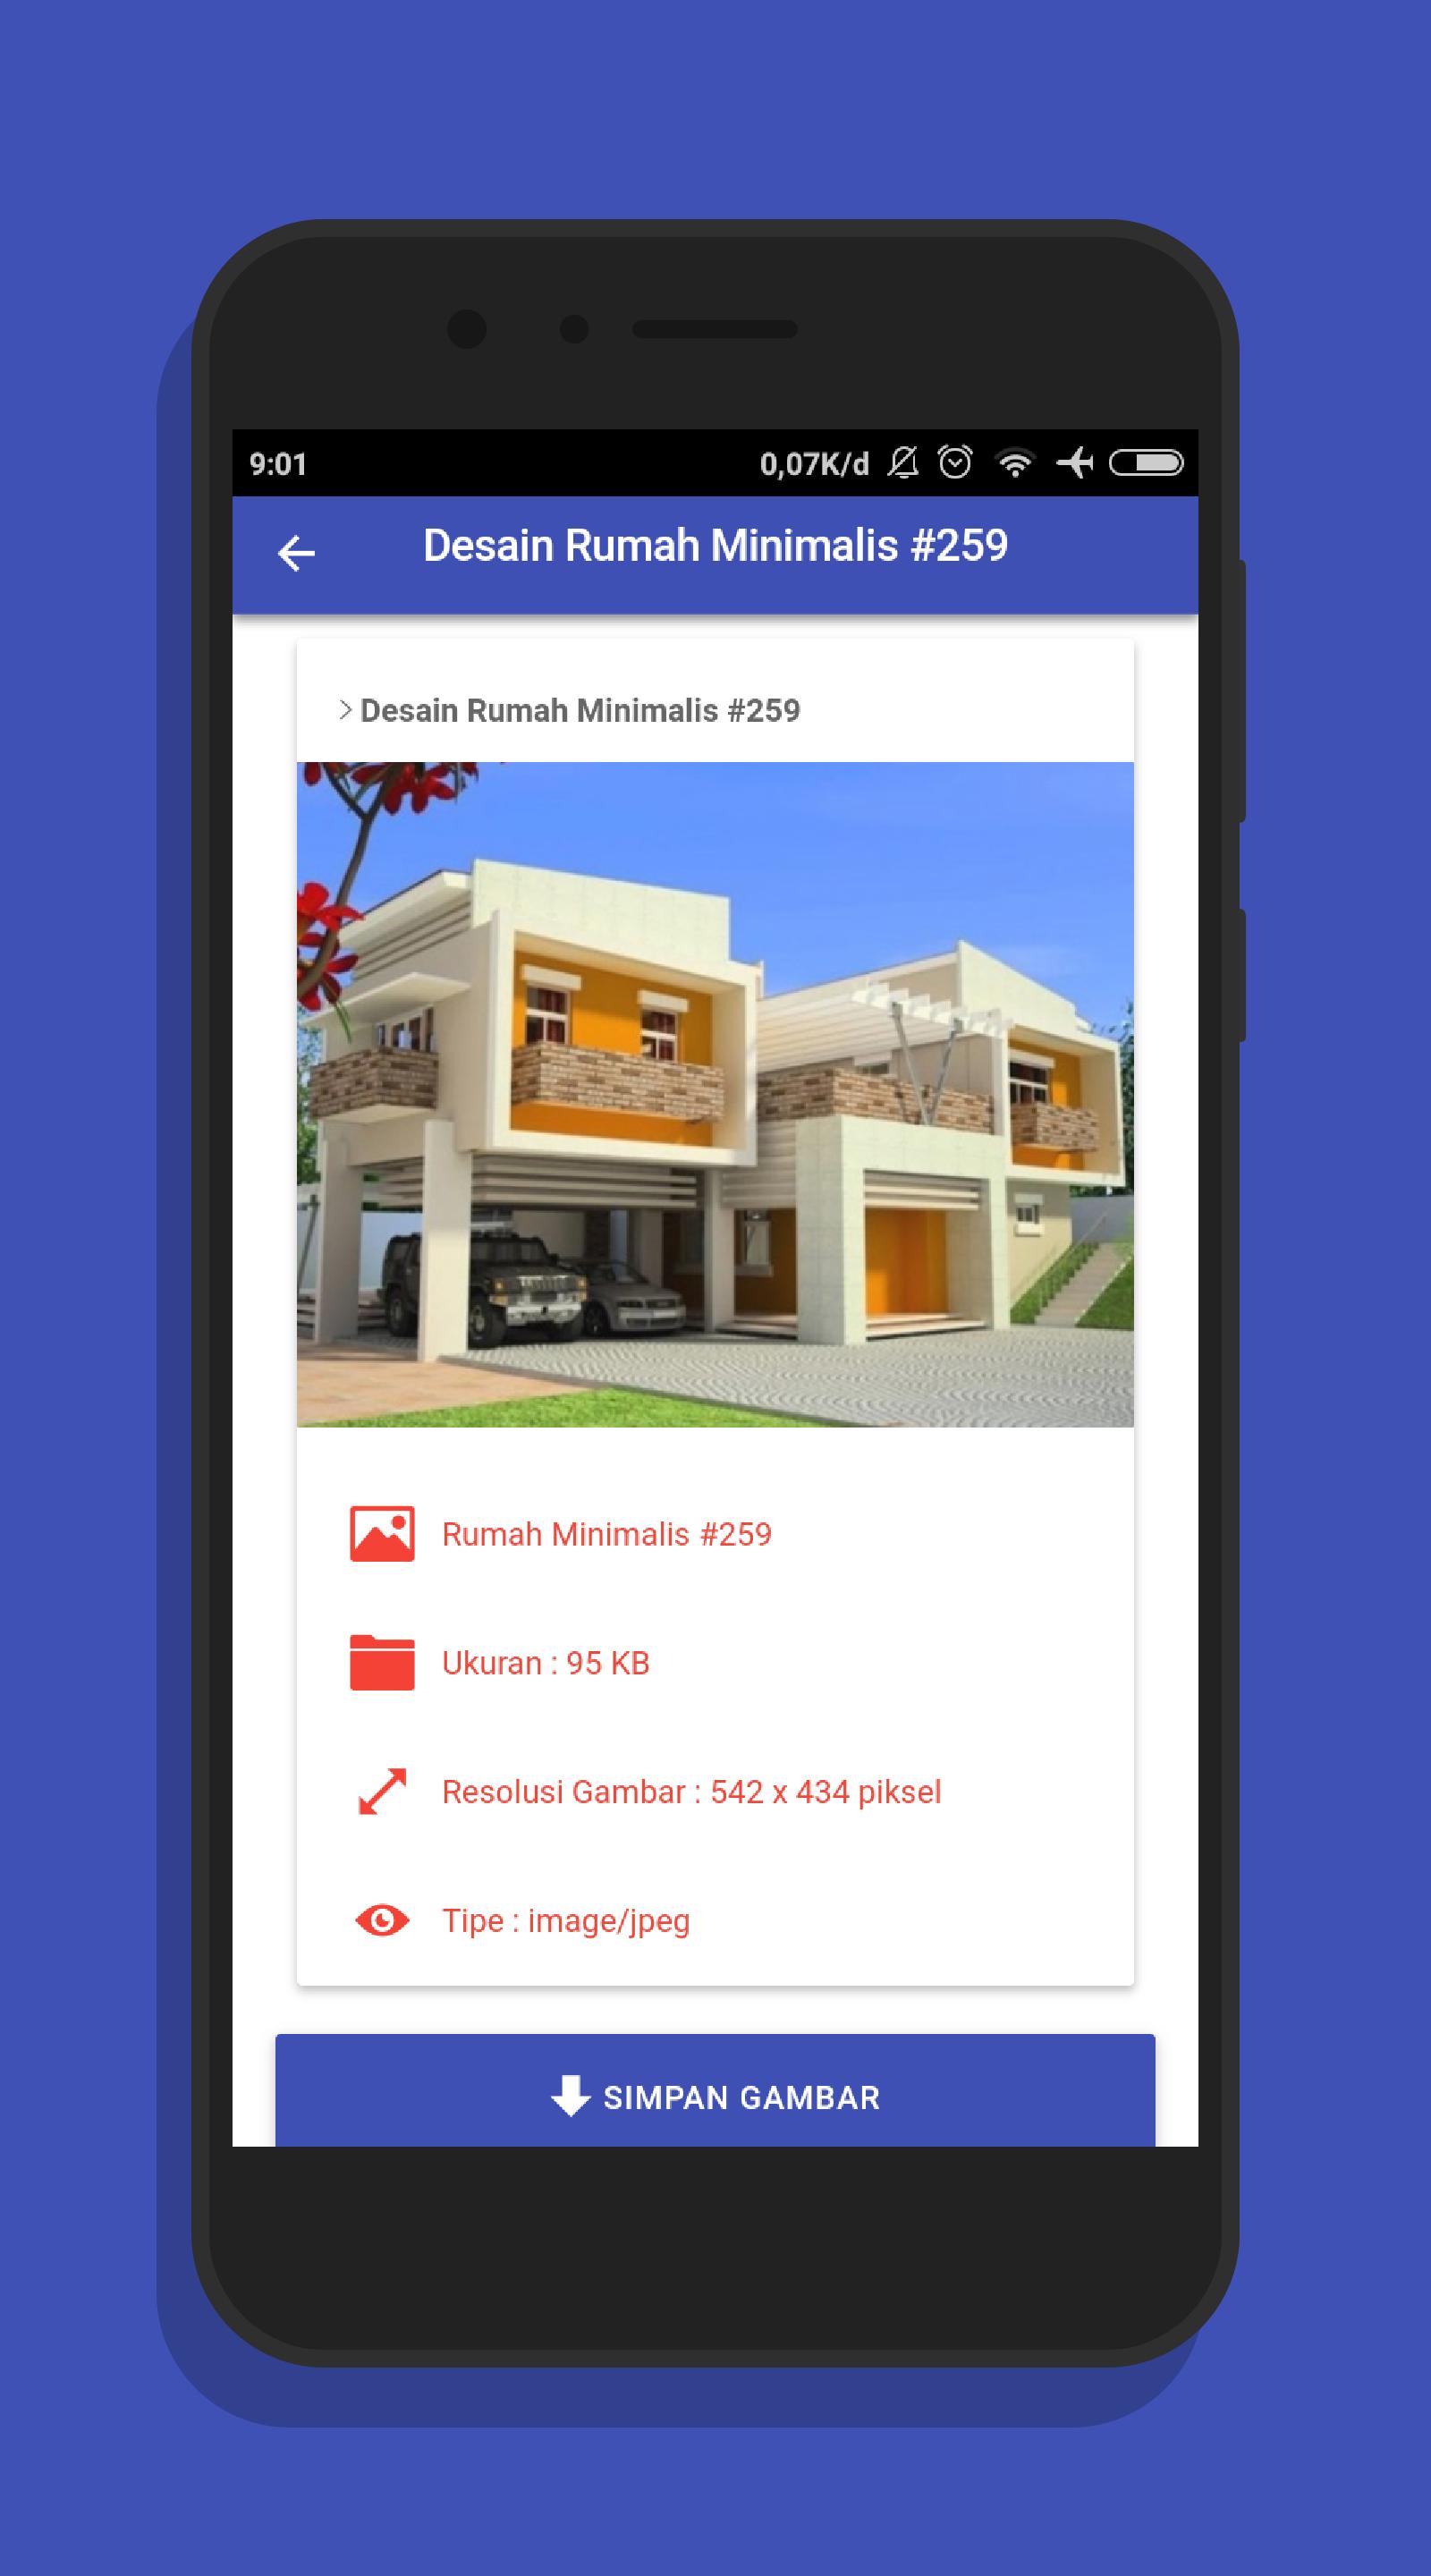 1001 Desain Rumah Minimalis Kumpulan Gambar For Android Apk